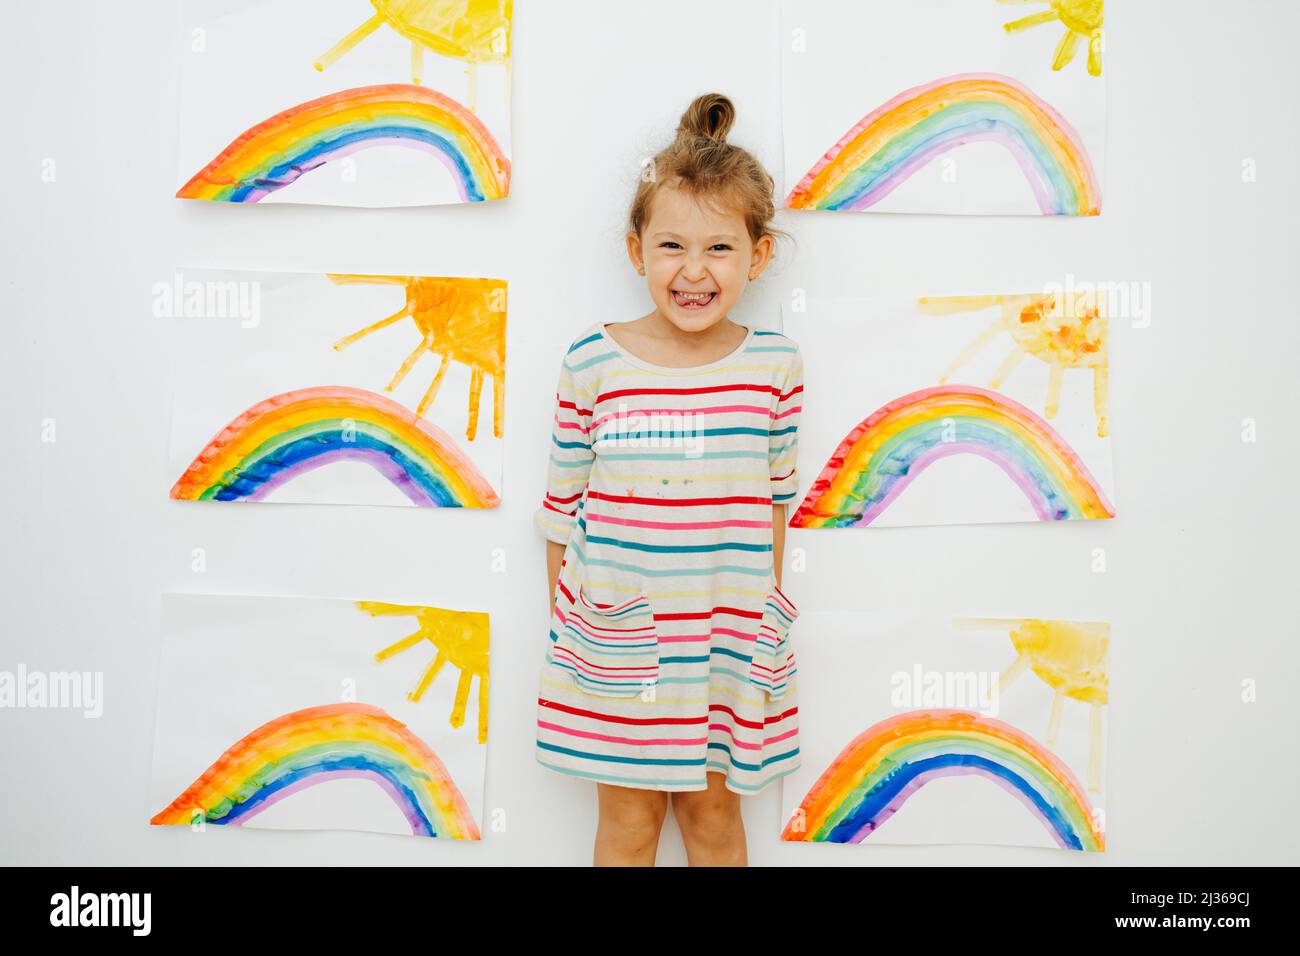 Ragazza energica allegra in una camicia vestito a righe accanto a sei dipinti simili di sole e arcobaleno che dipinse. Posando di fronte alla parete. Foto Stock